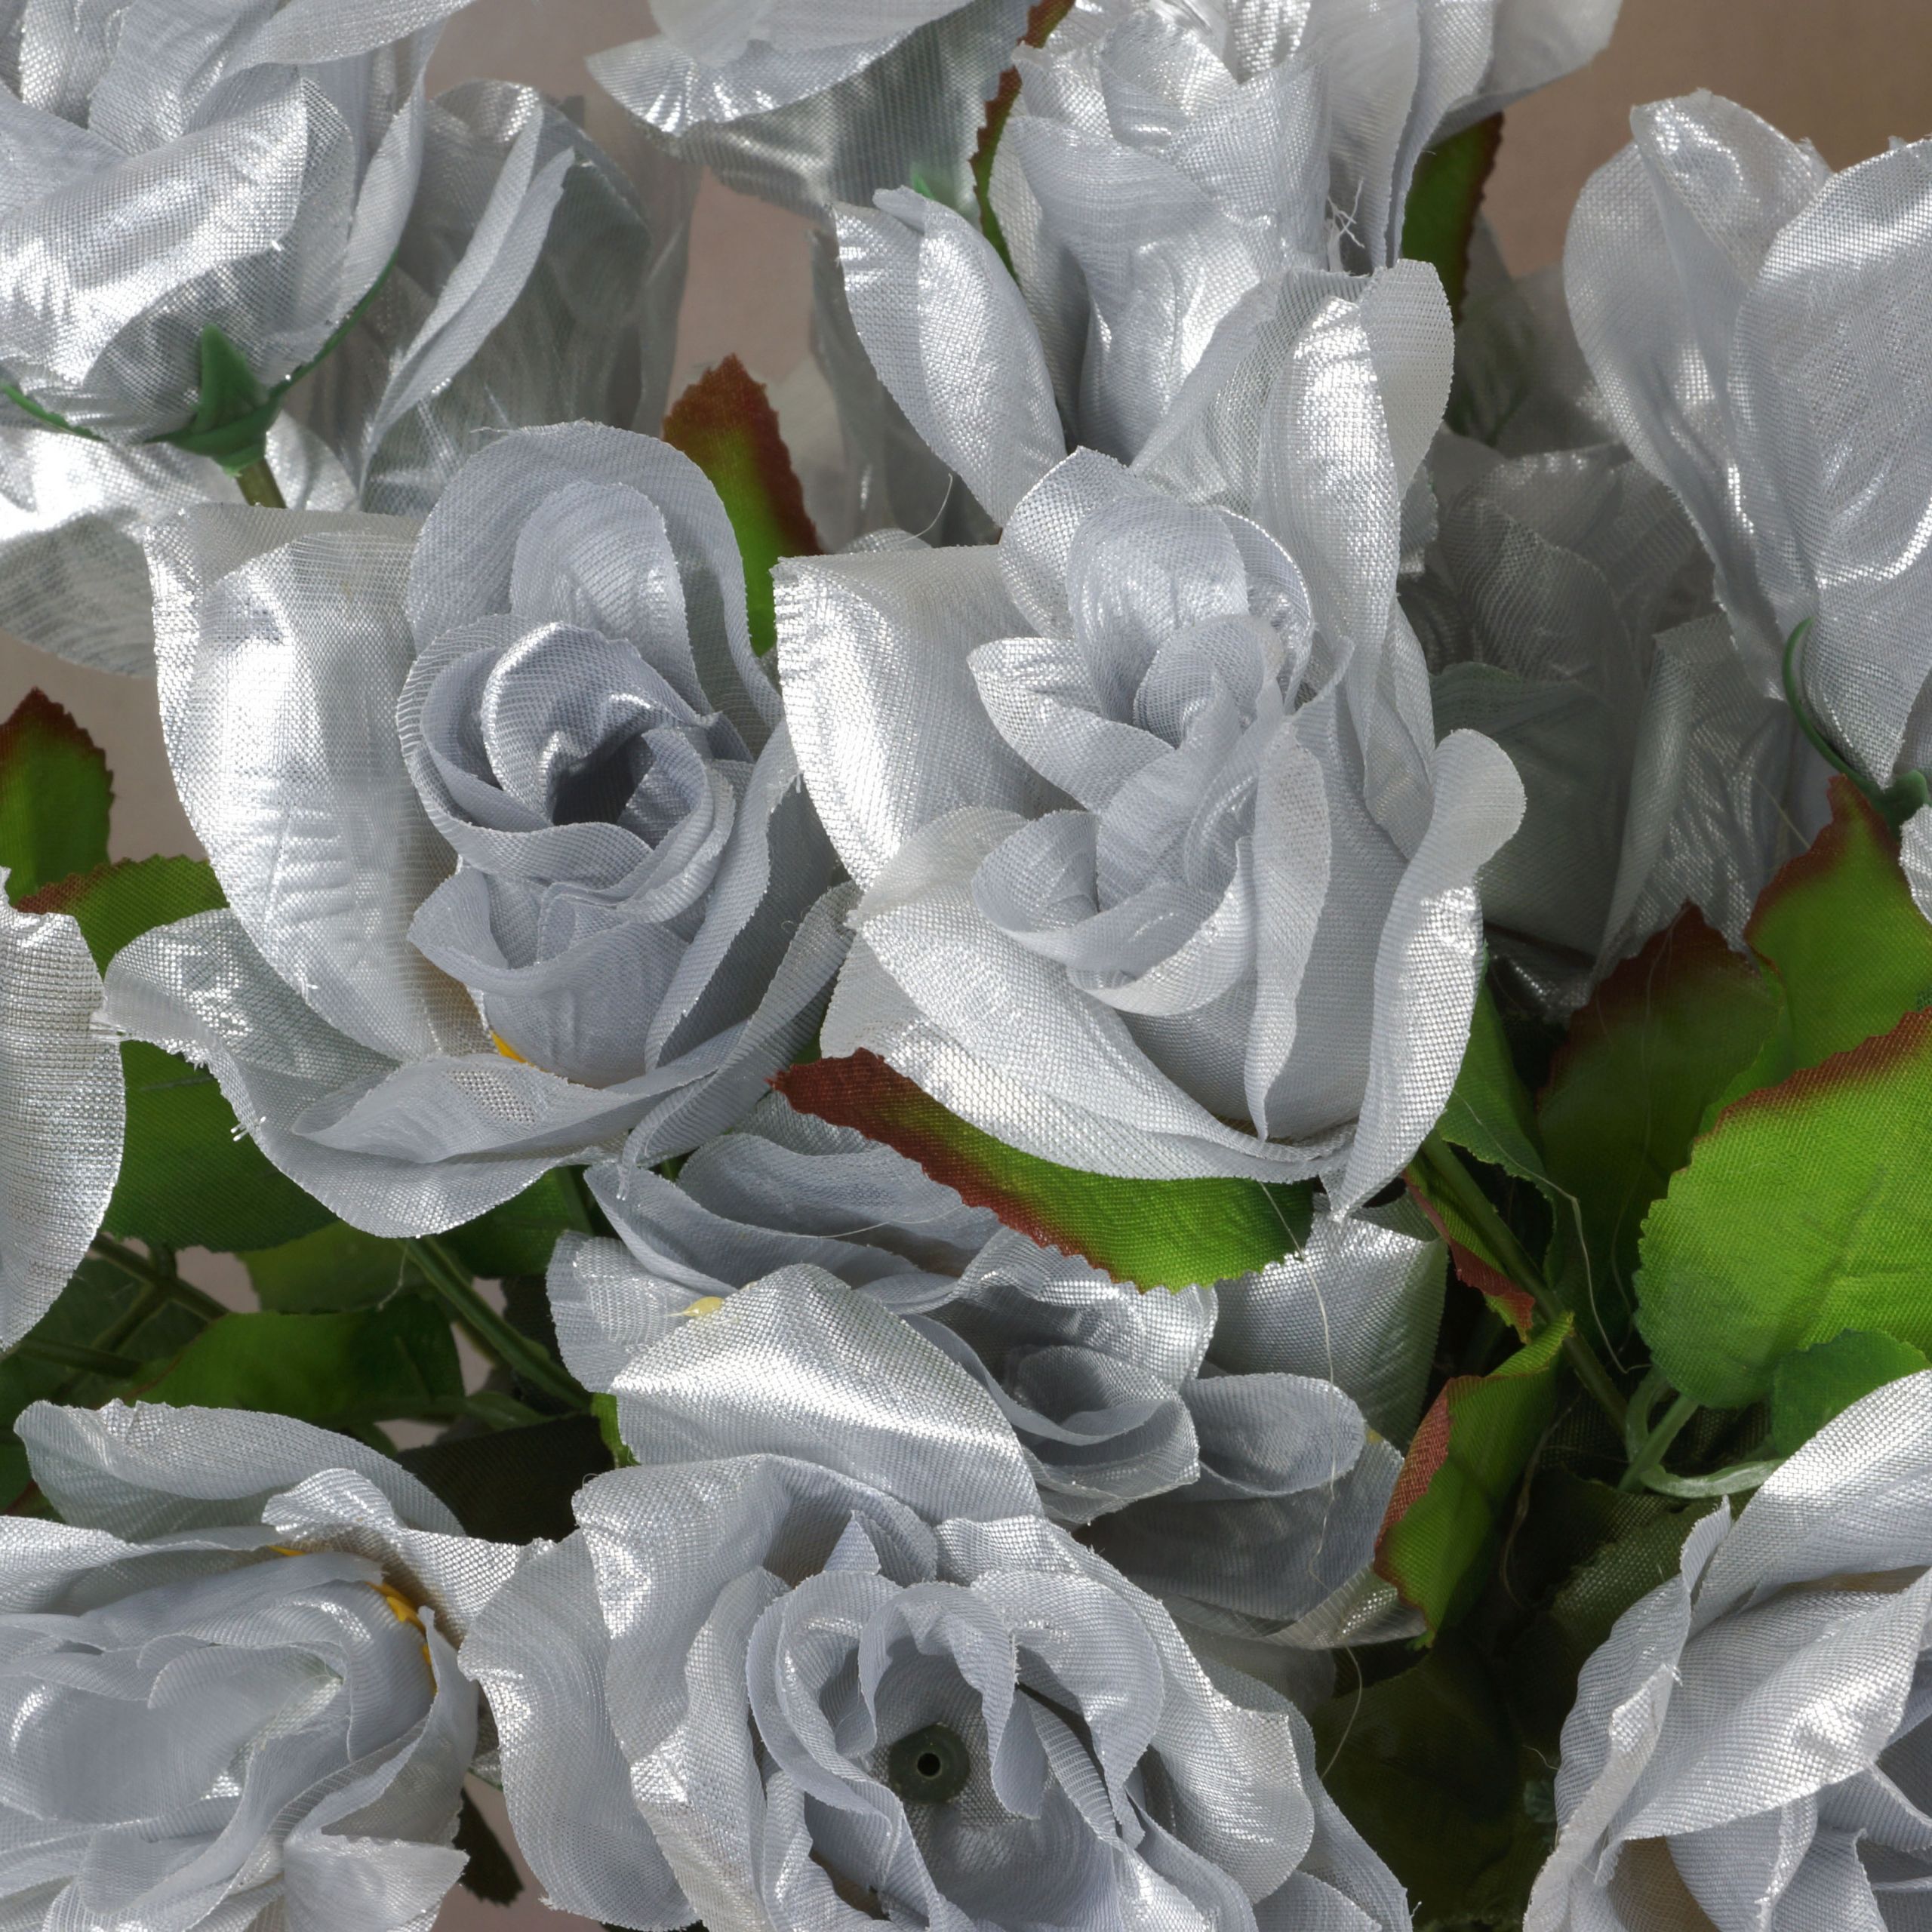 Bulk Flowers For Wedding
 336 VELVET BLOOM OPEN ROSES Wholesale Wedding Flowers